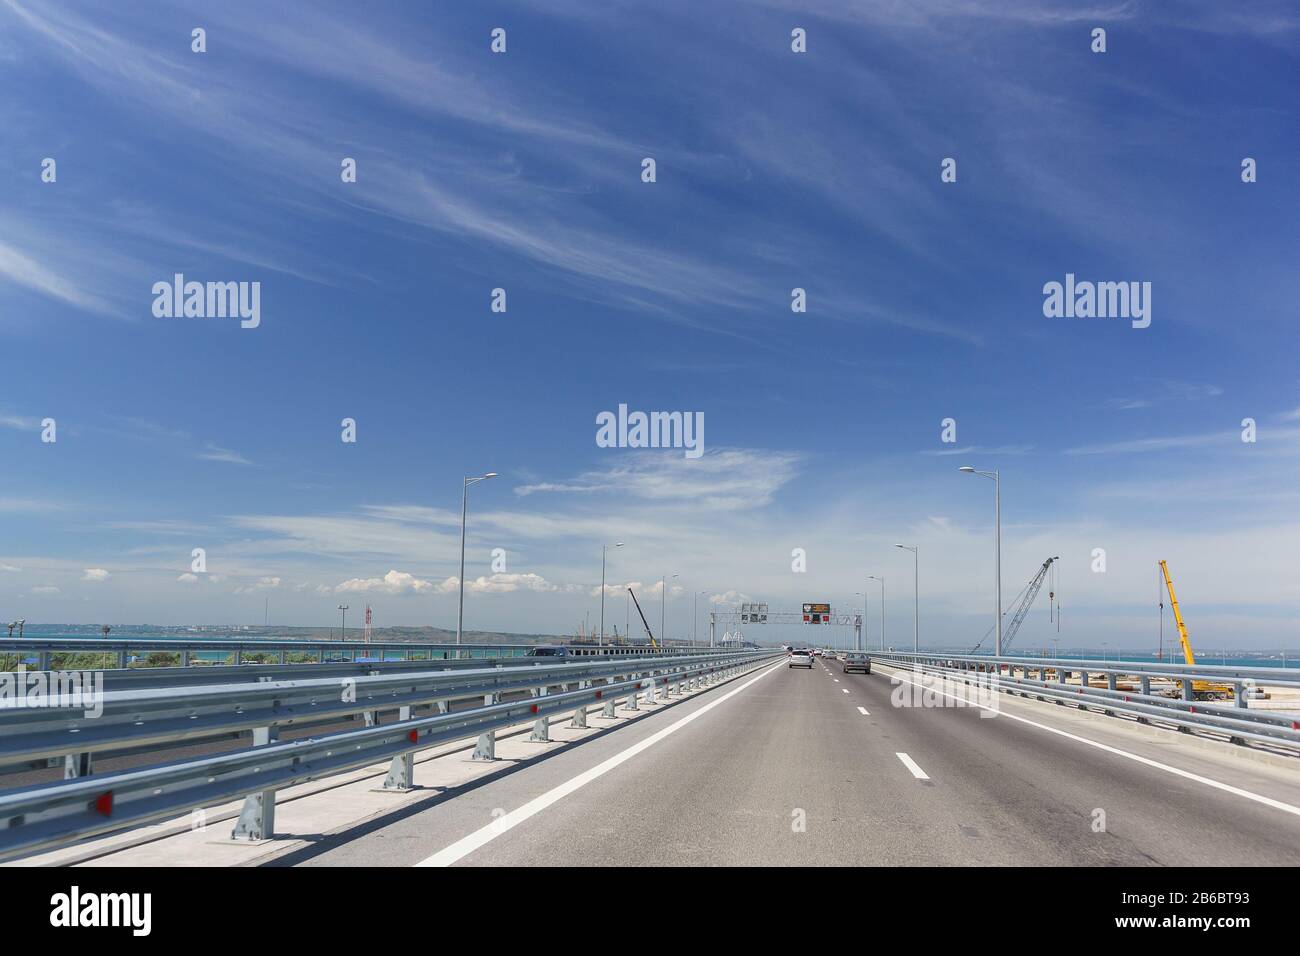 Les voitures passent sur le pont de Crimée le jour du soleil. Sur la gauche se trouve la construction d'un pont ferroviaire. Mai 2018 Banque D'Images